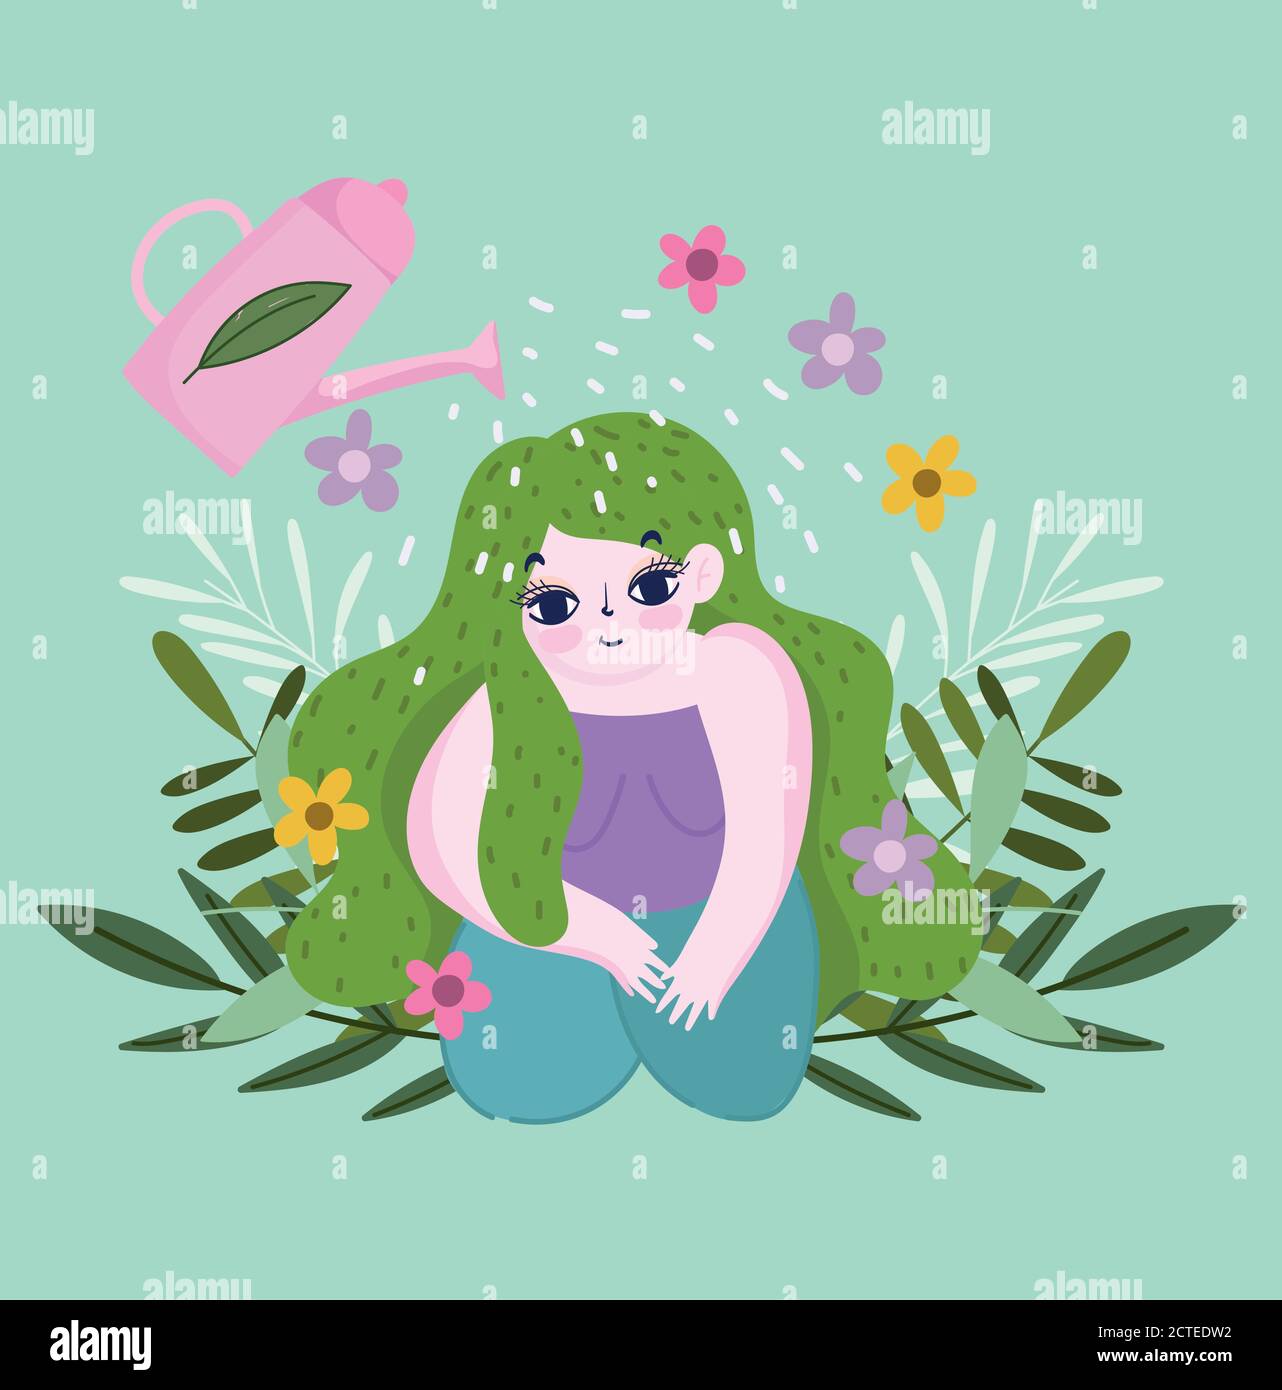 jardin heureux, arrosoir peut verser de l'eau sur la fille avec des plantes et illustration de vecteur de fleur Illustration de Vecteur